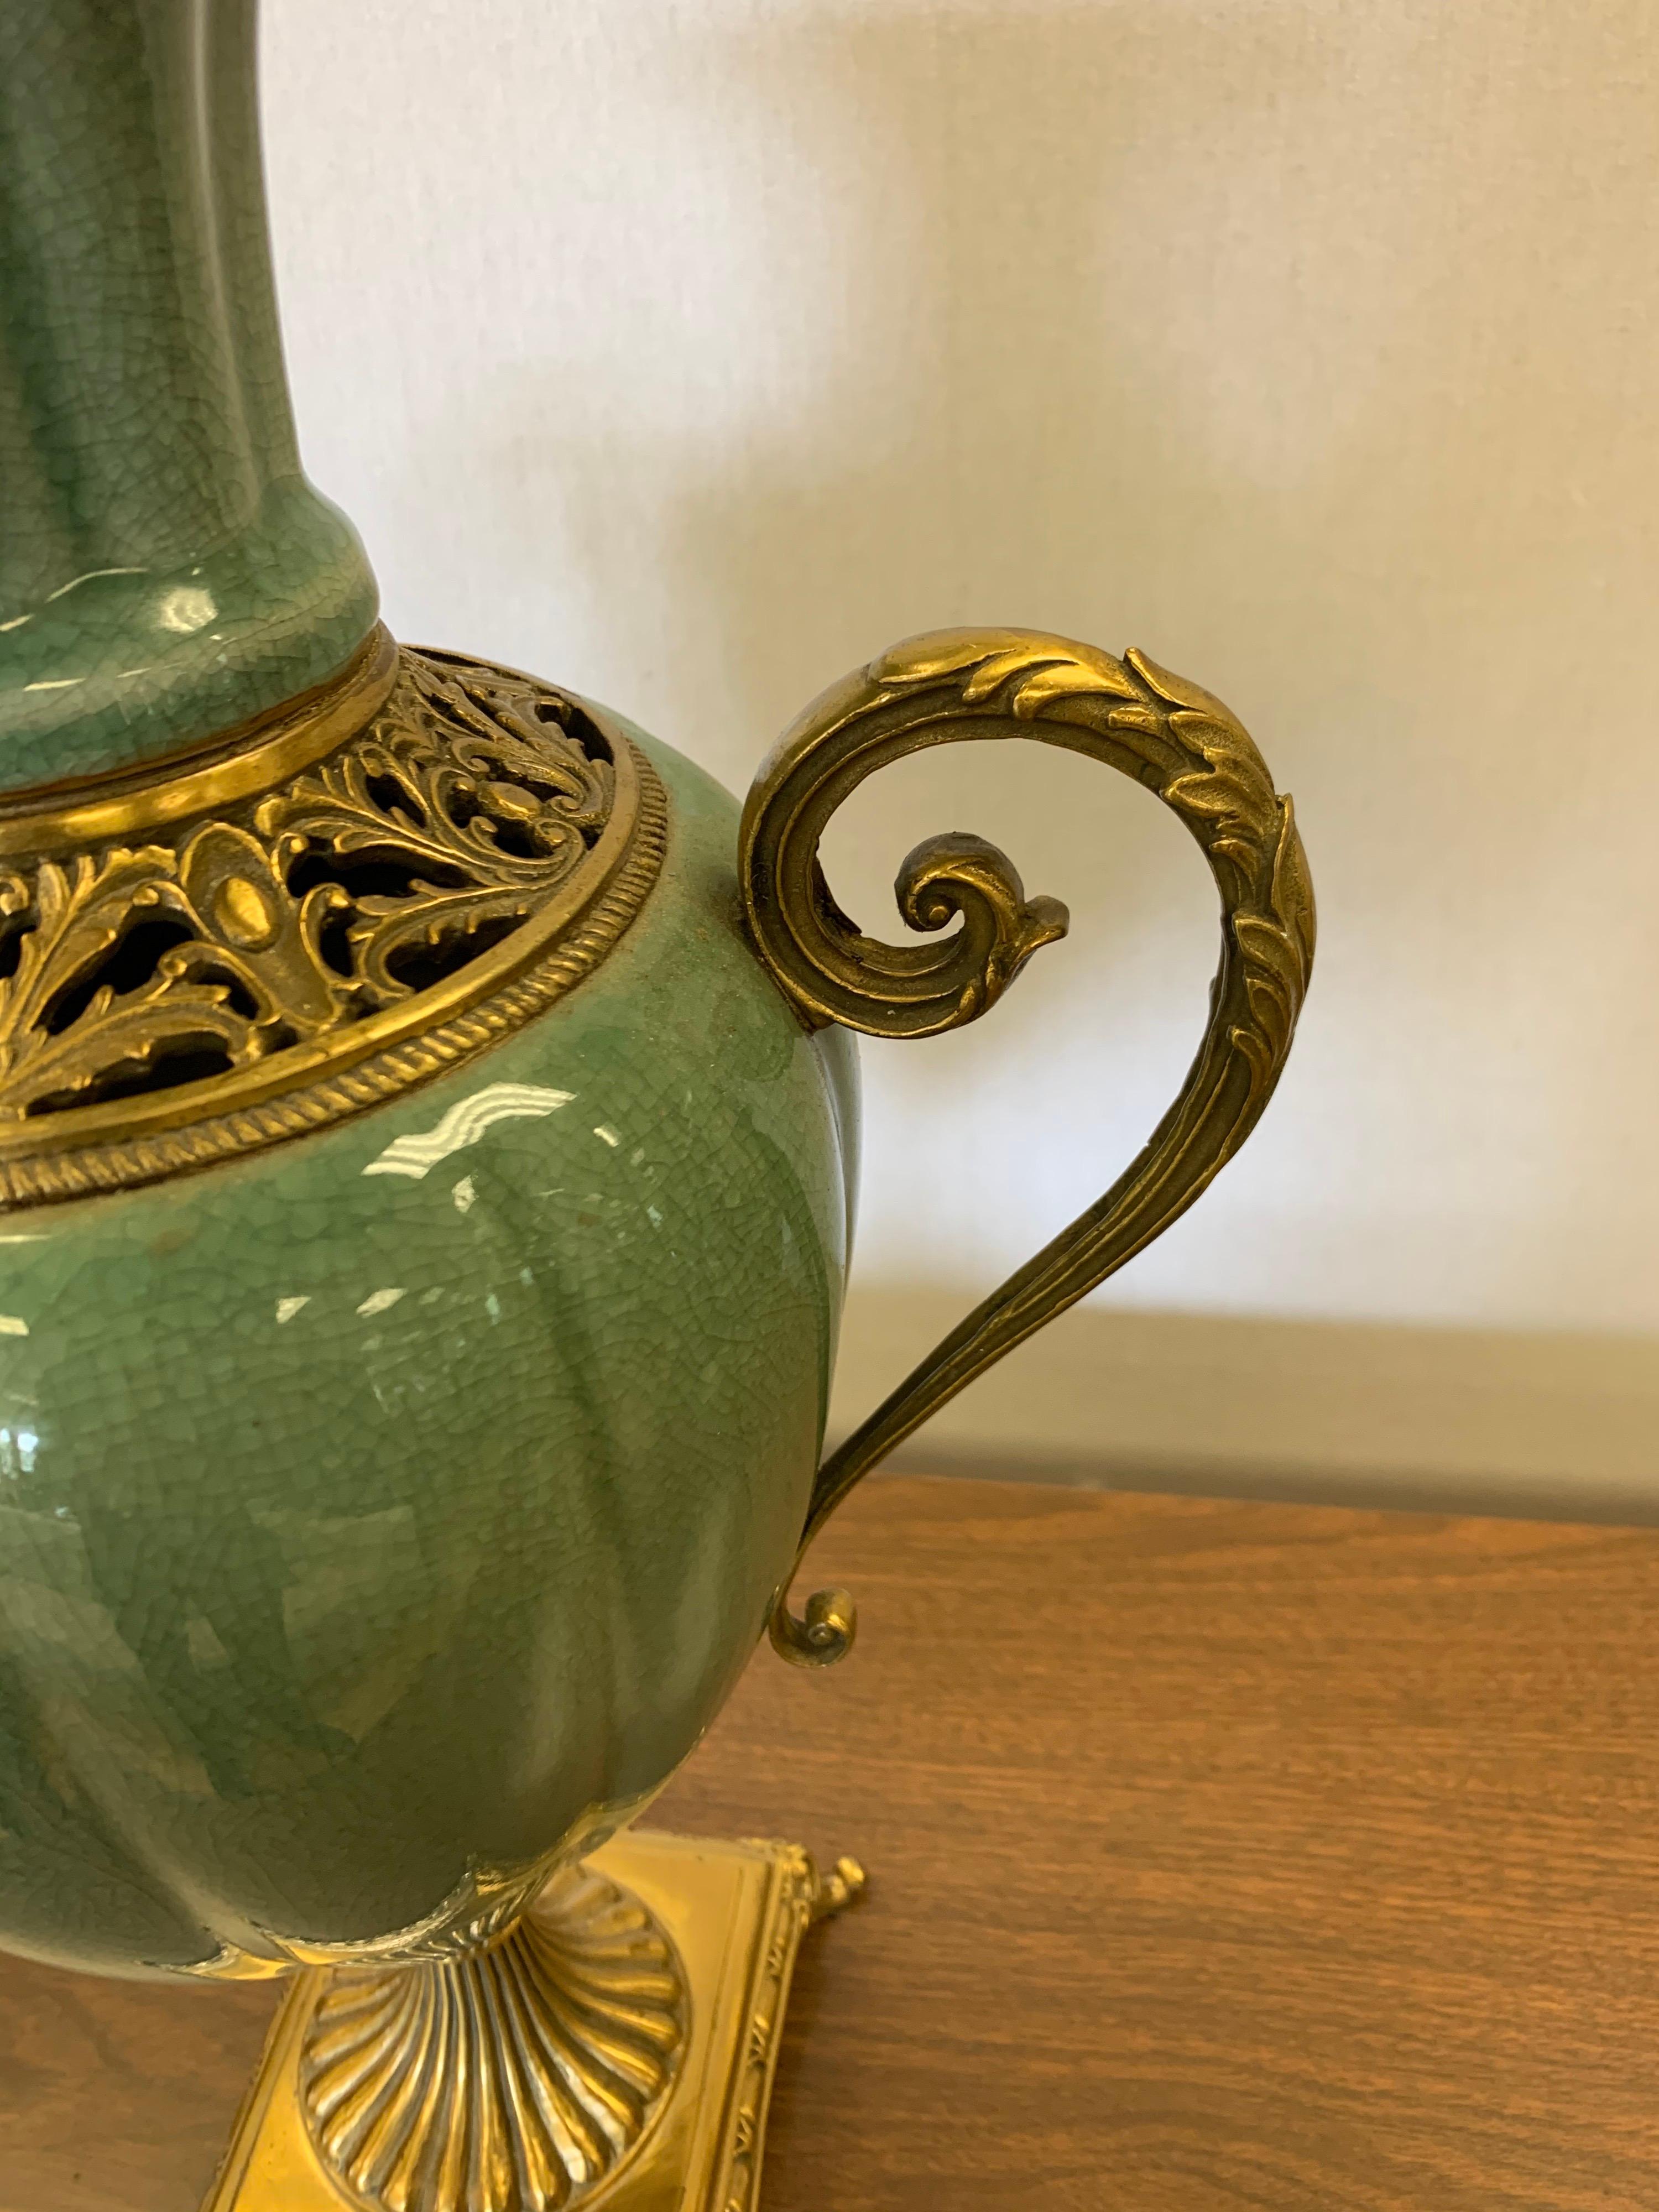 Large Celadon Porcelain Vase Urn Vessel with Brass Handles and Mounts 1